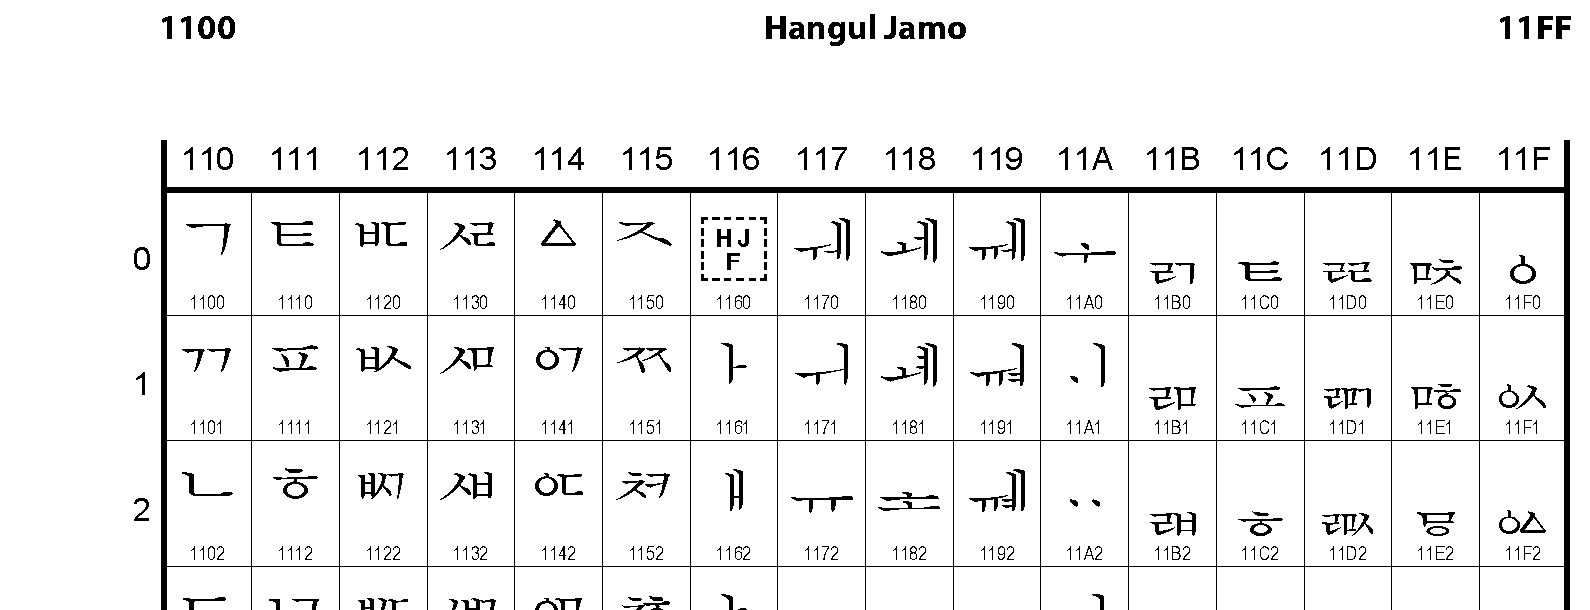 Unicode - Hangul Jamo